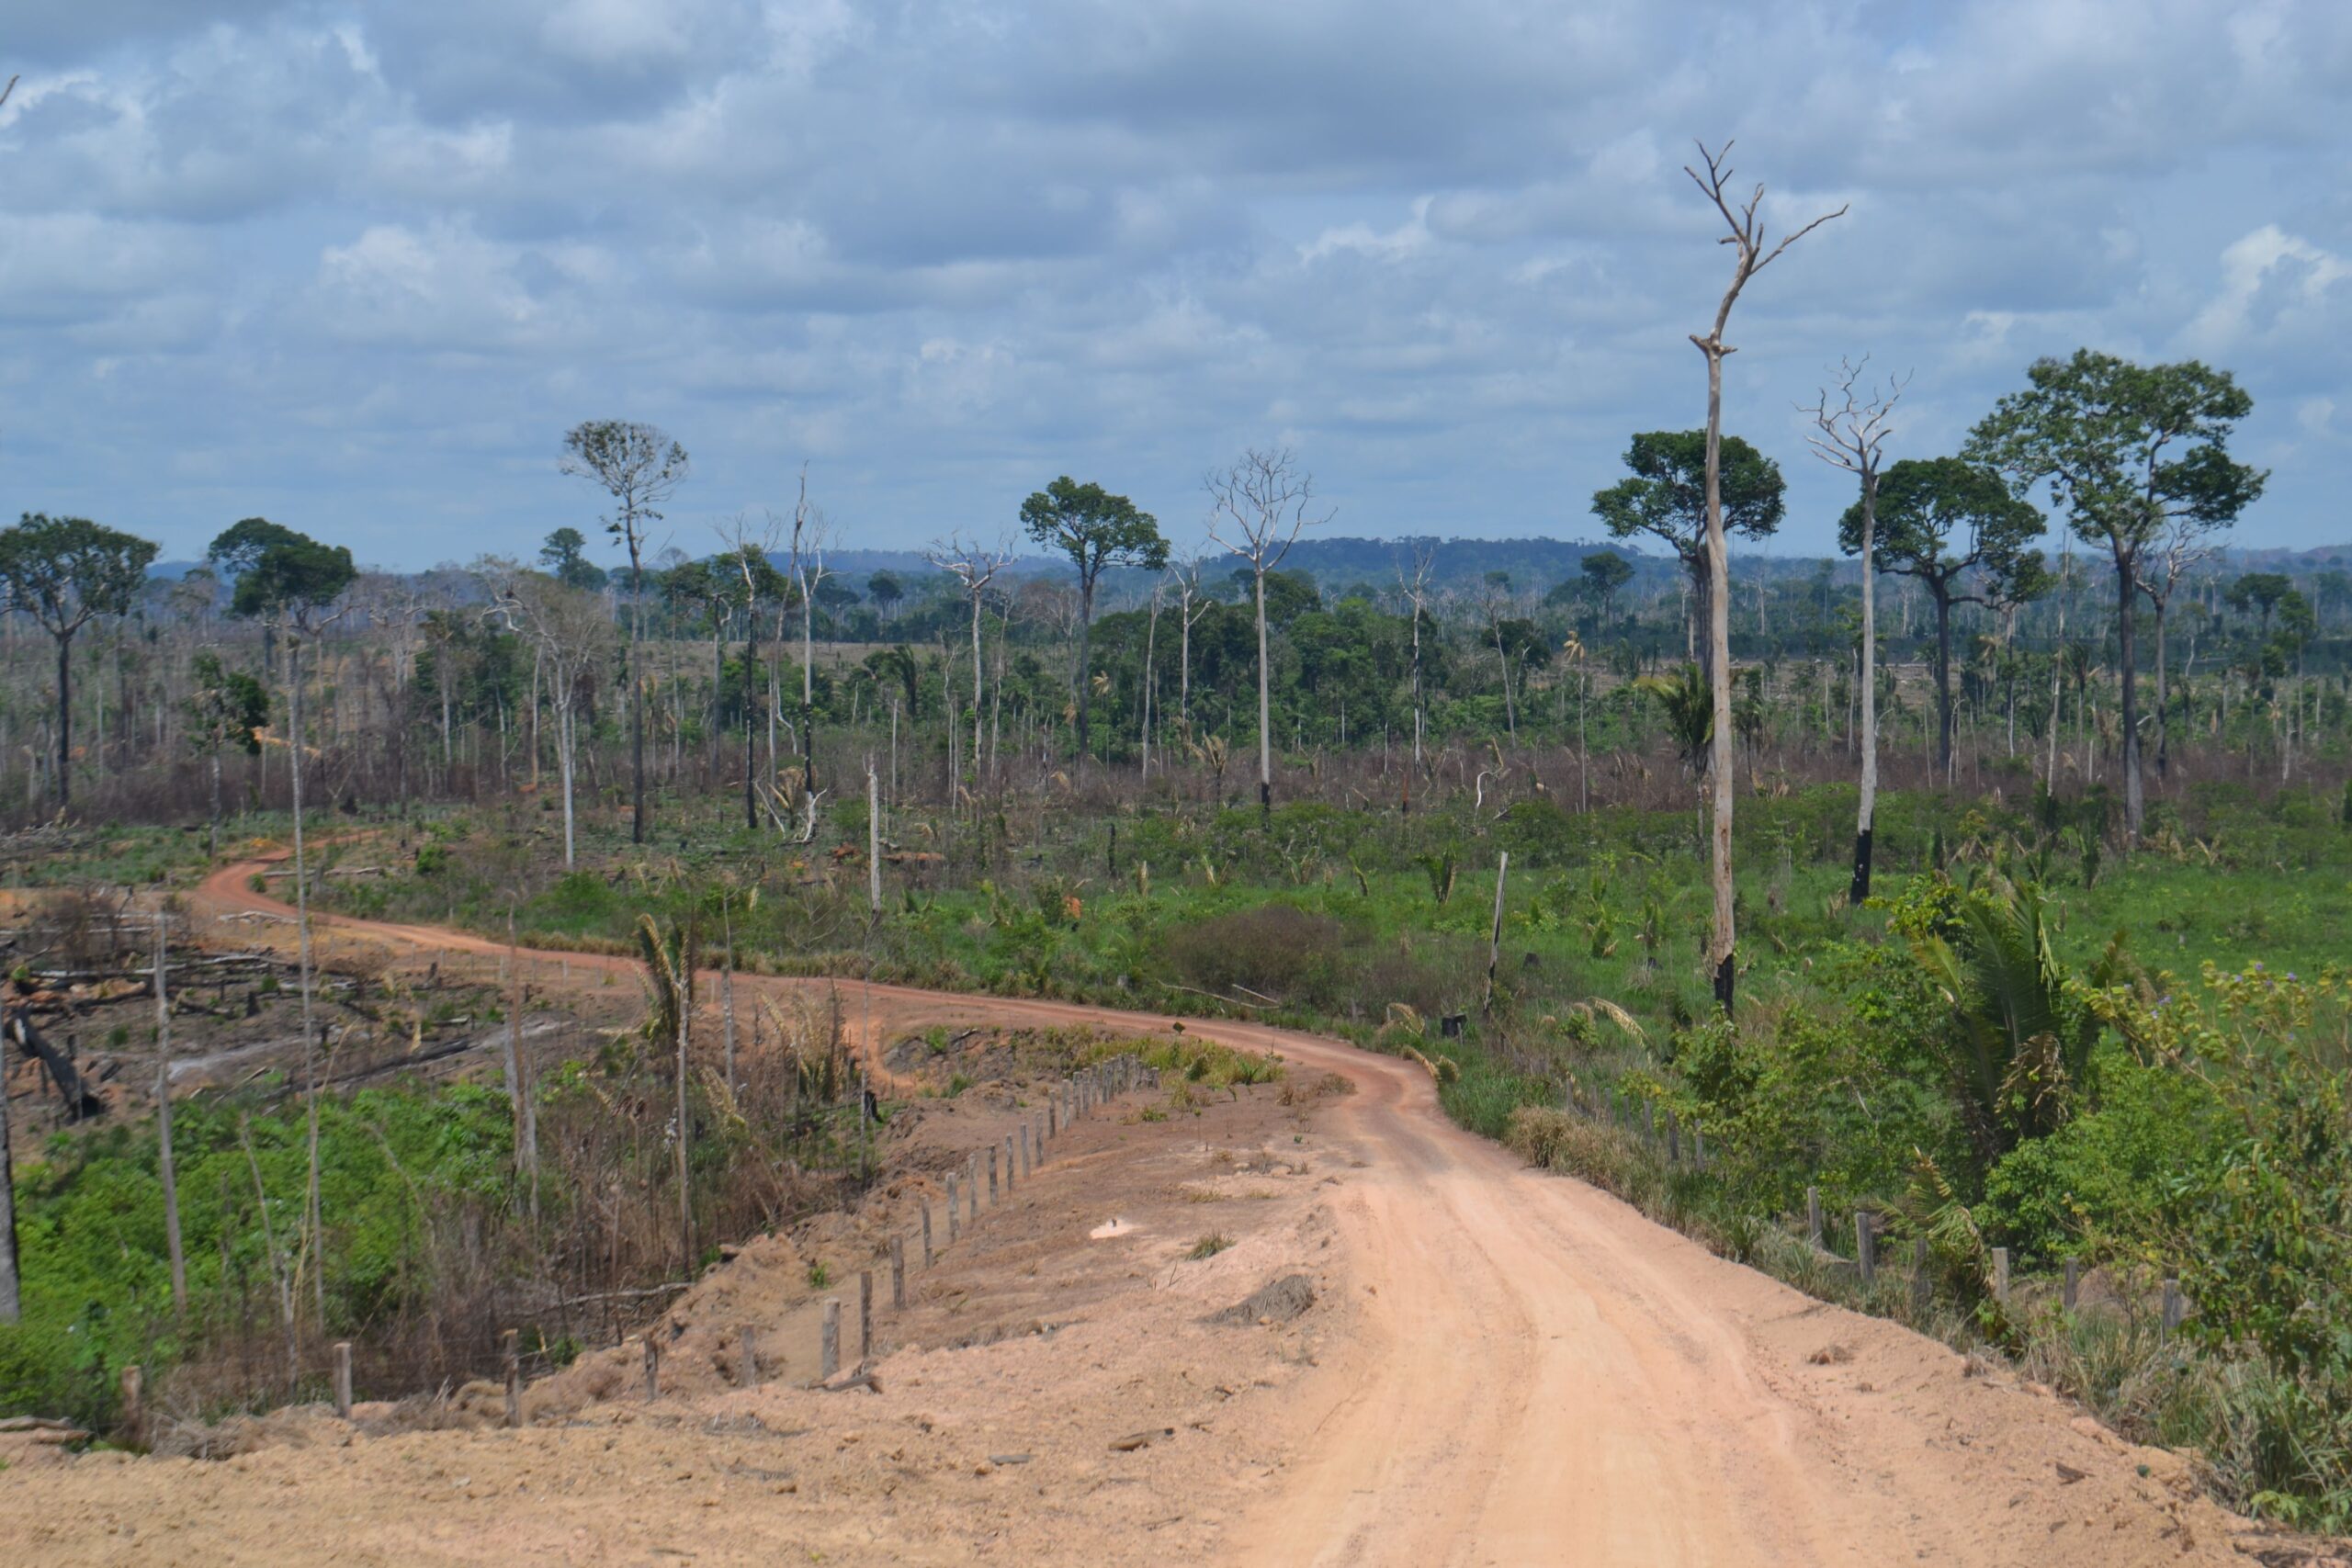 A imagem mostra uma paisagem com chão batido e com vegetração degradada, com árvores esparsas e vegetação baixa.